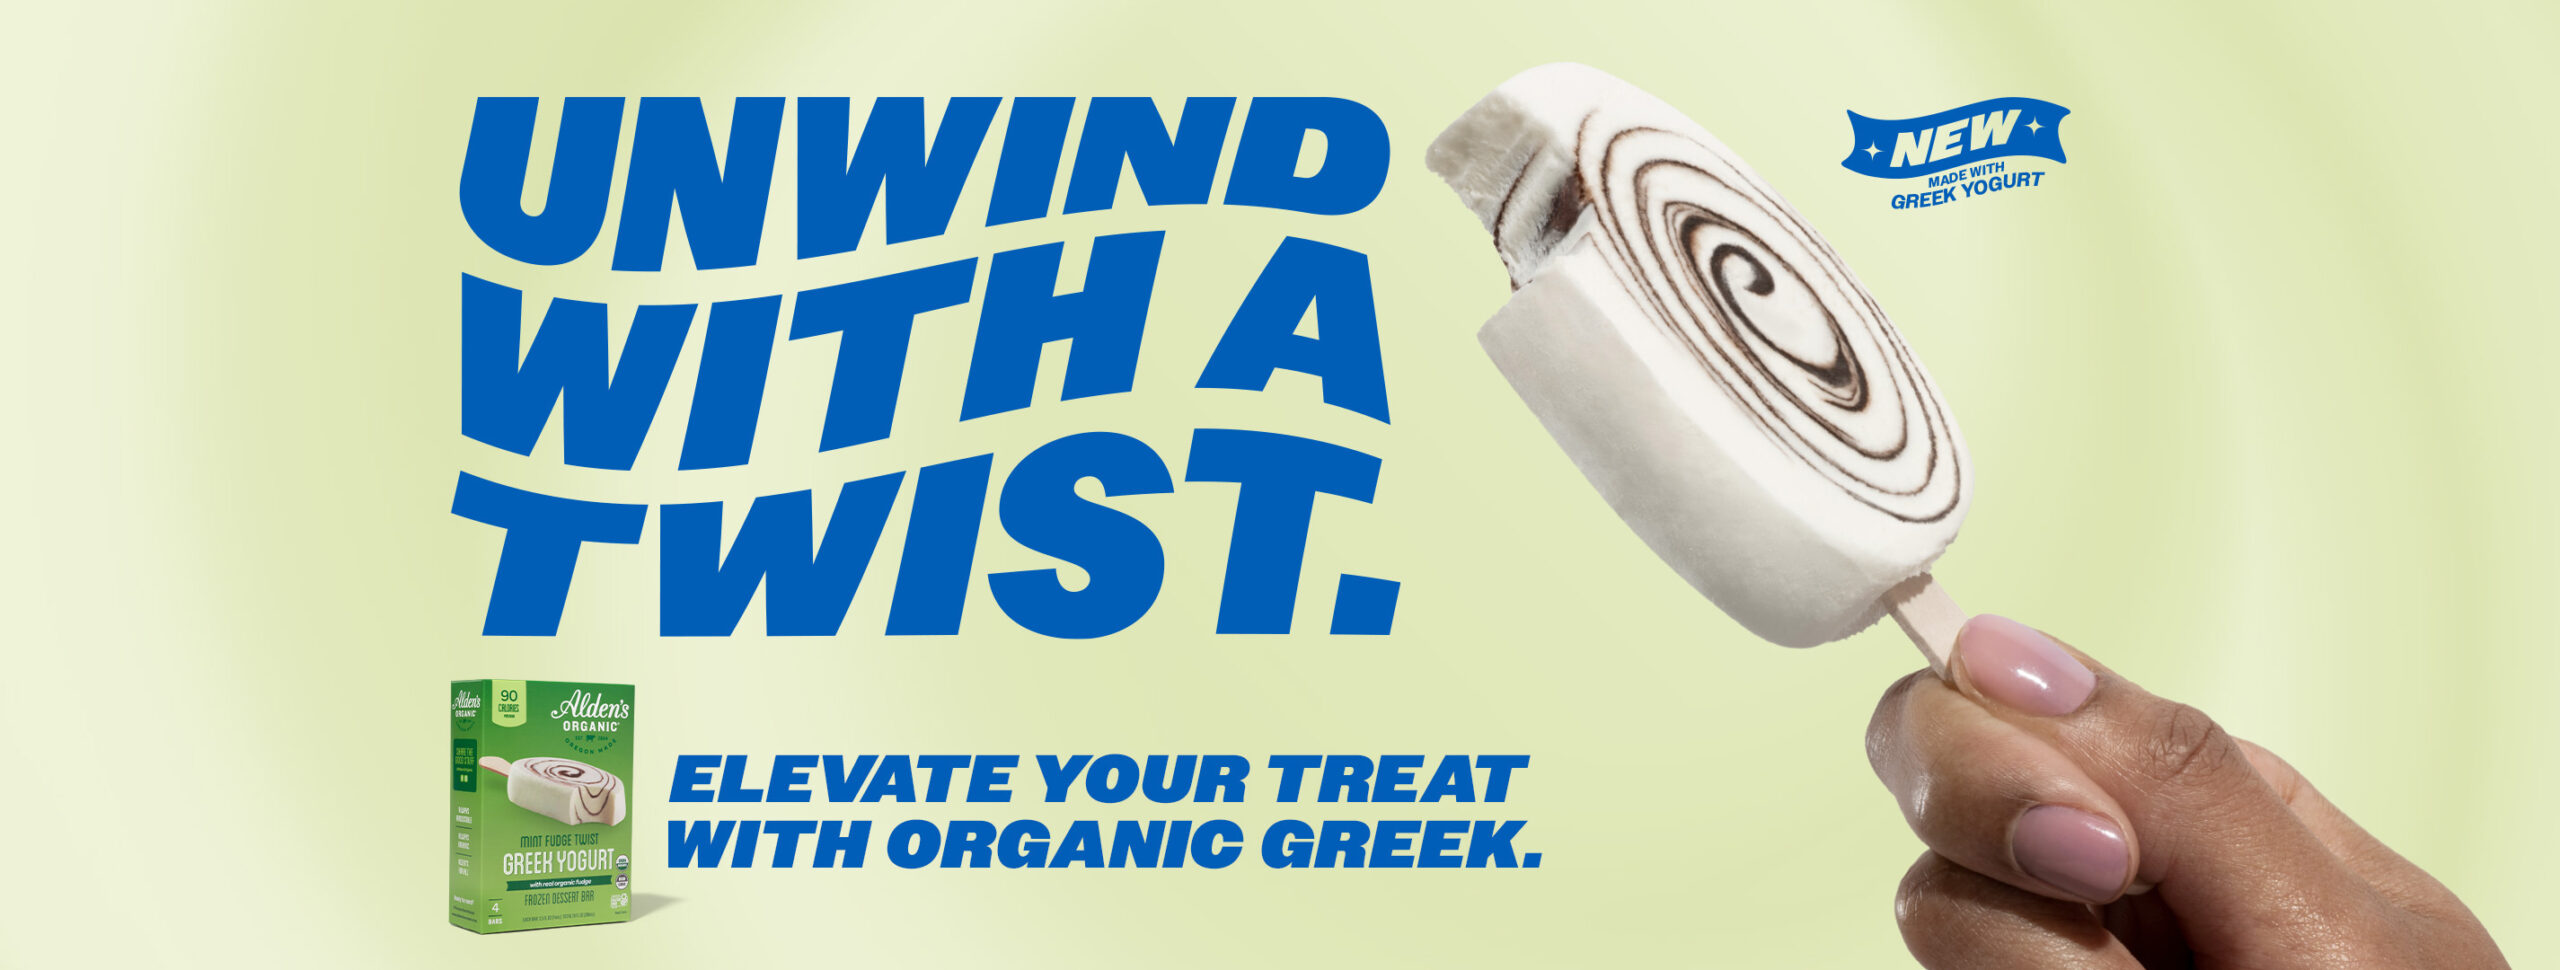 Alden's Greek Yogurt - Unwind with a Twist.